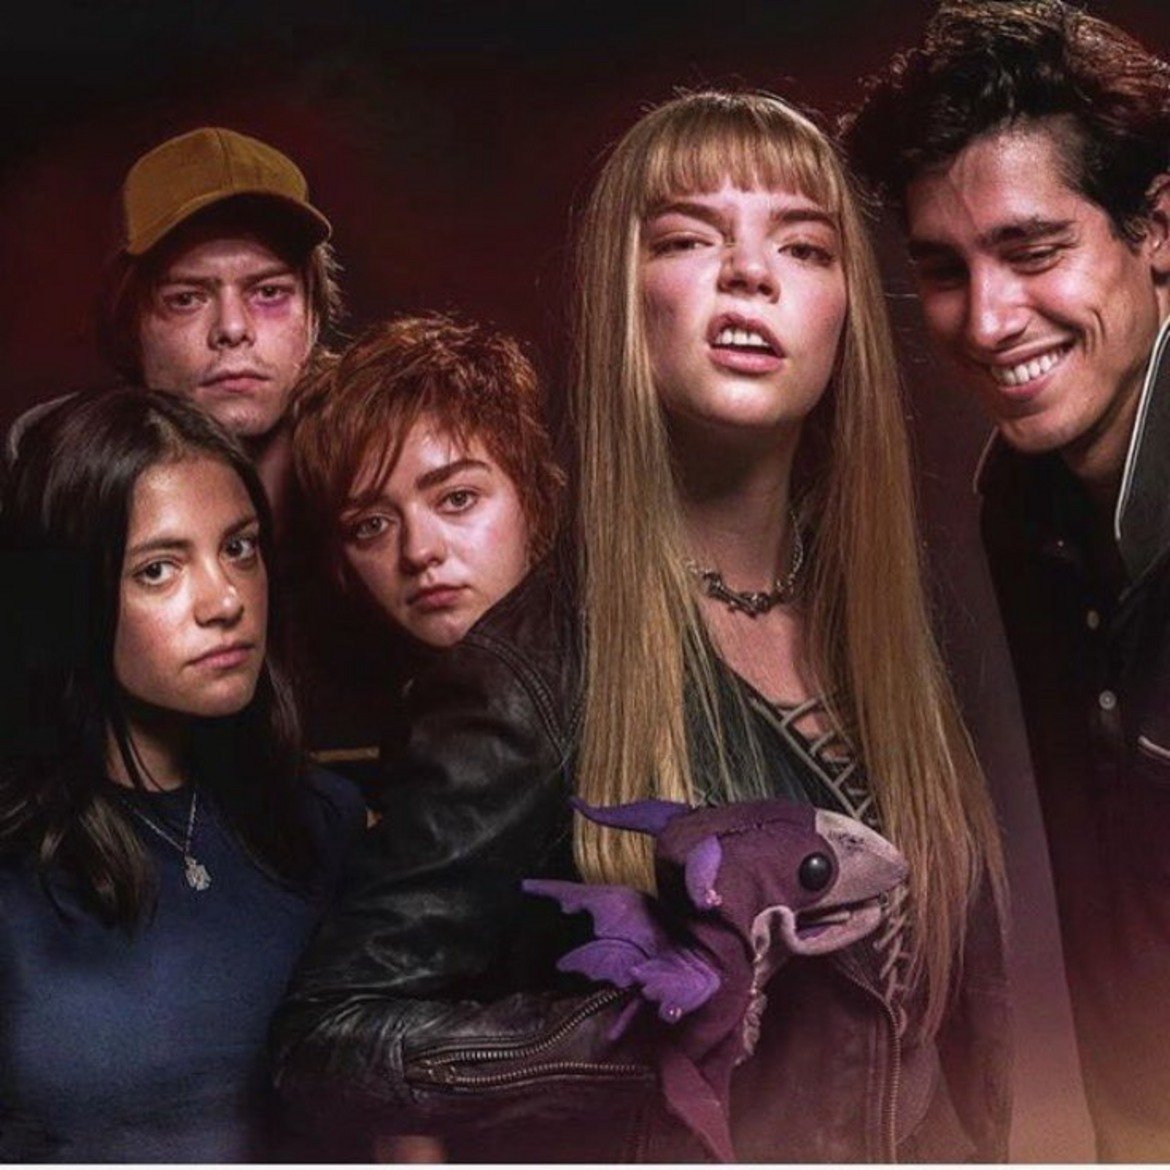 The New Mutants

Премиера: април 2020 г. 

"Новите мутанти" е замислен като последната филмова адаптация от поредицата за X-Men. Историята на петте момчета и момичета, които откриват свръхсилите си по време на незаконен арест от тайна служба, включва актьори като Мейзи Уилямс (Game of Thrones), Аня Тейлър-Джой (The Witch), Чарли Хийтън (Stranger Things), и др. 
